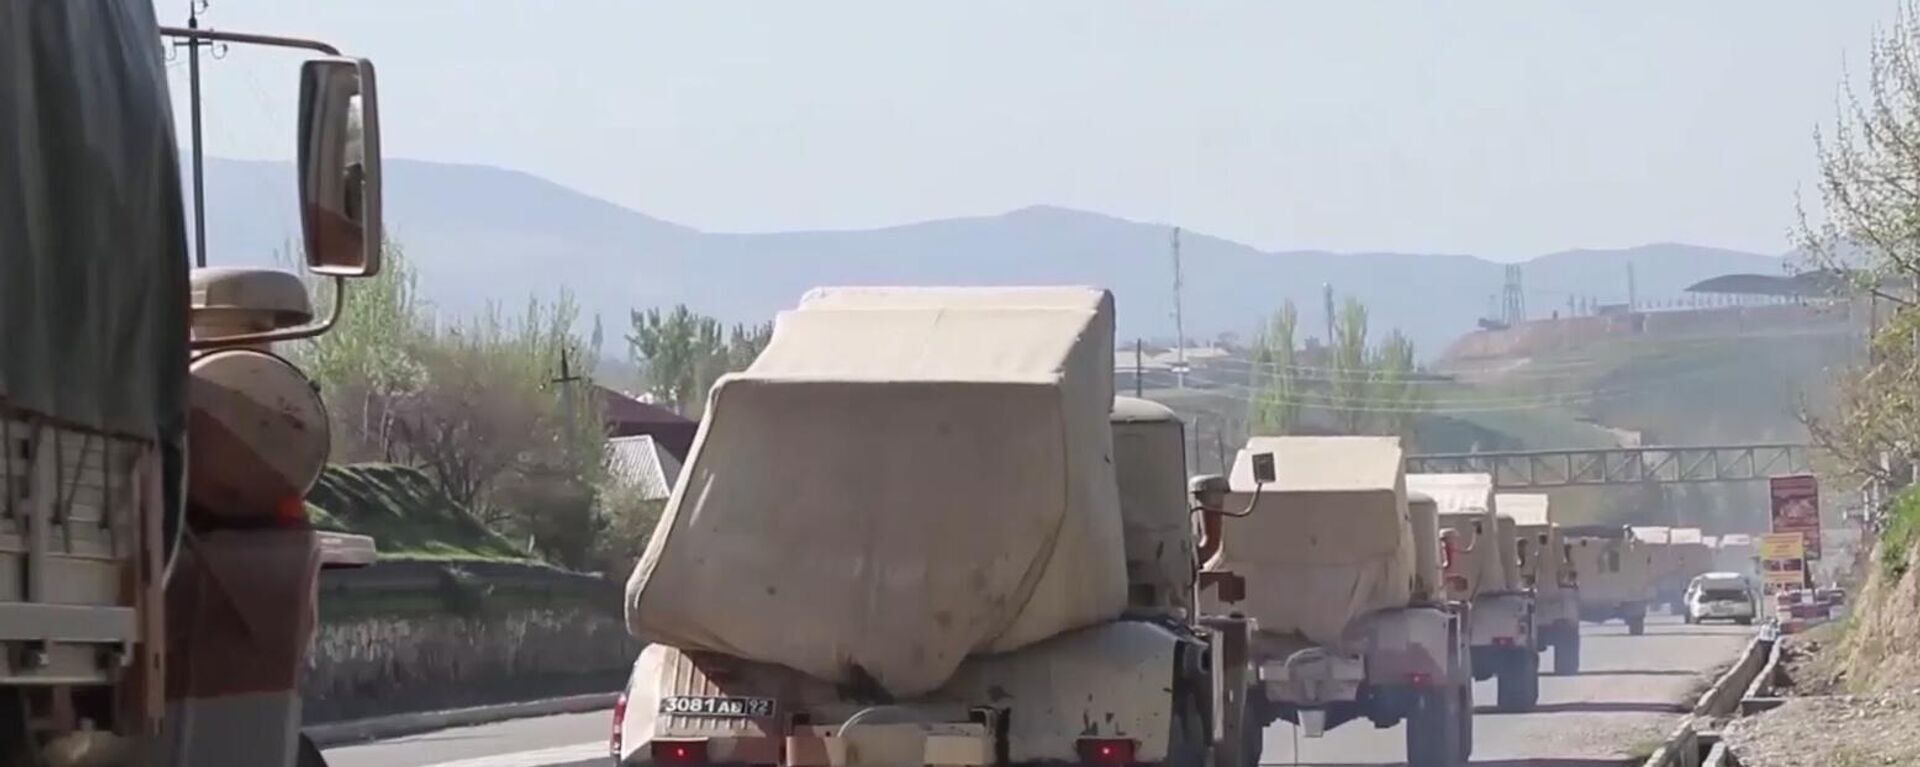 Vehículos militares rusos circulan por una carretera en Tayikistán, el 28 de julio de 2021 - Sputnik Mundo, 1920, 02.08.2021